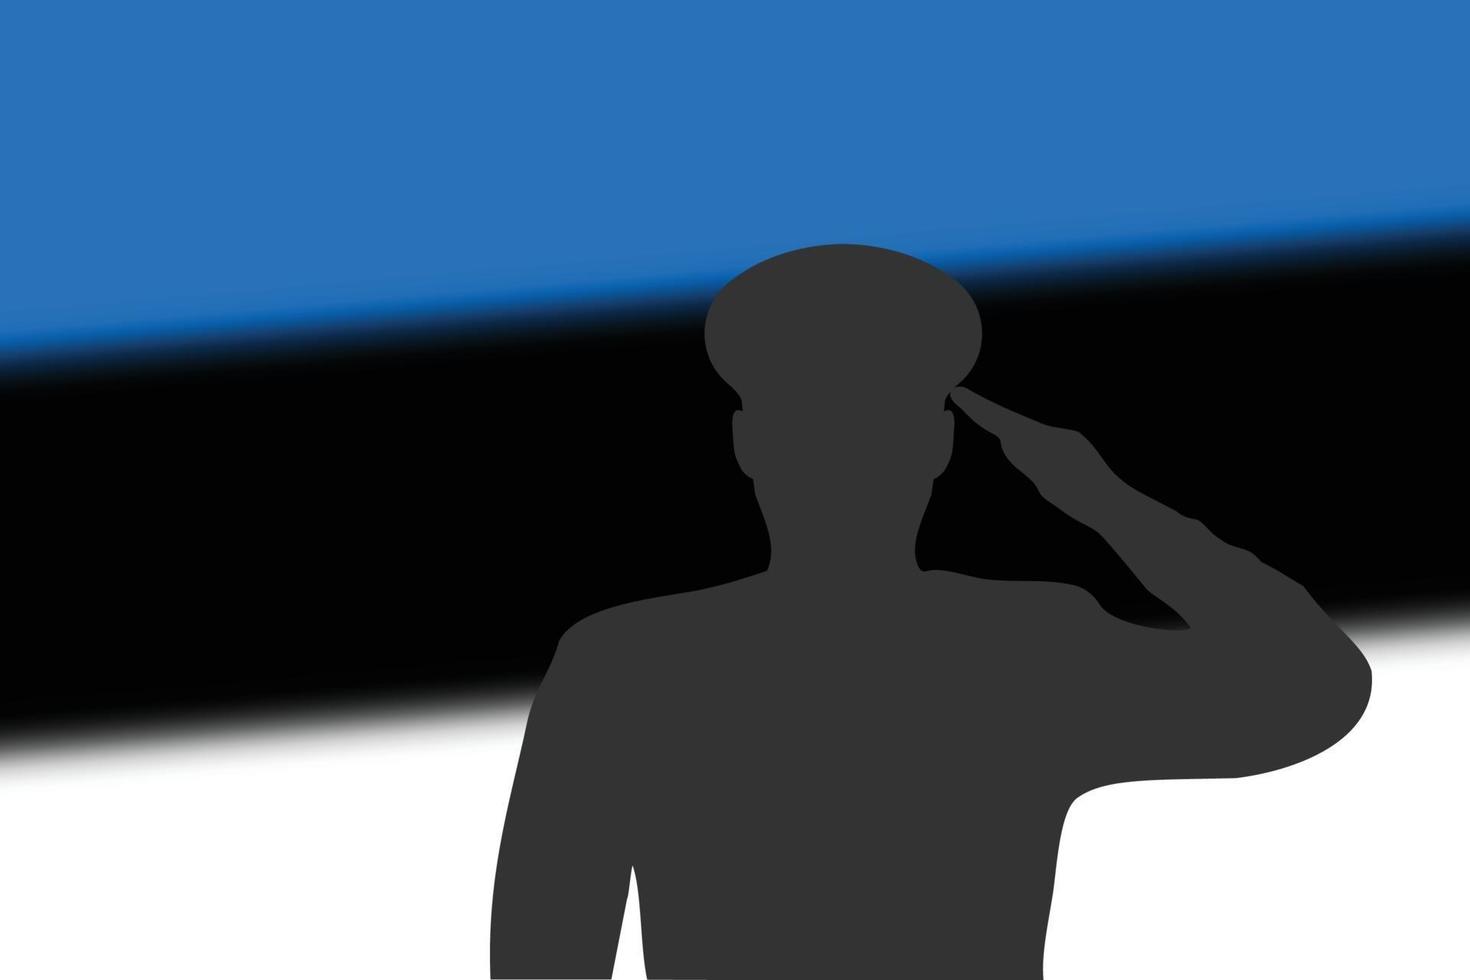 Lötsilhouette auf unscharfem Hintergrund mit Estland-Flagge. vektor